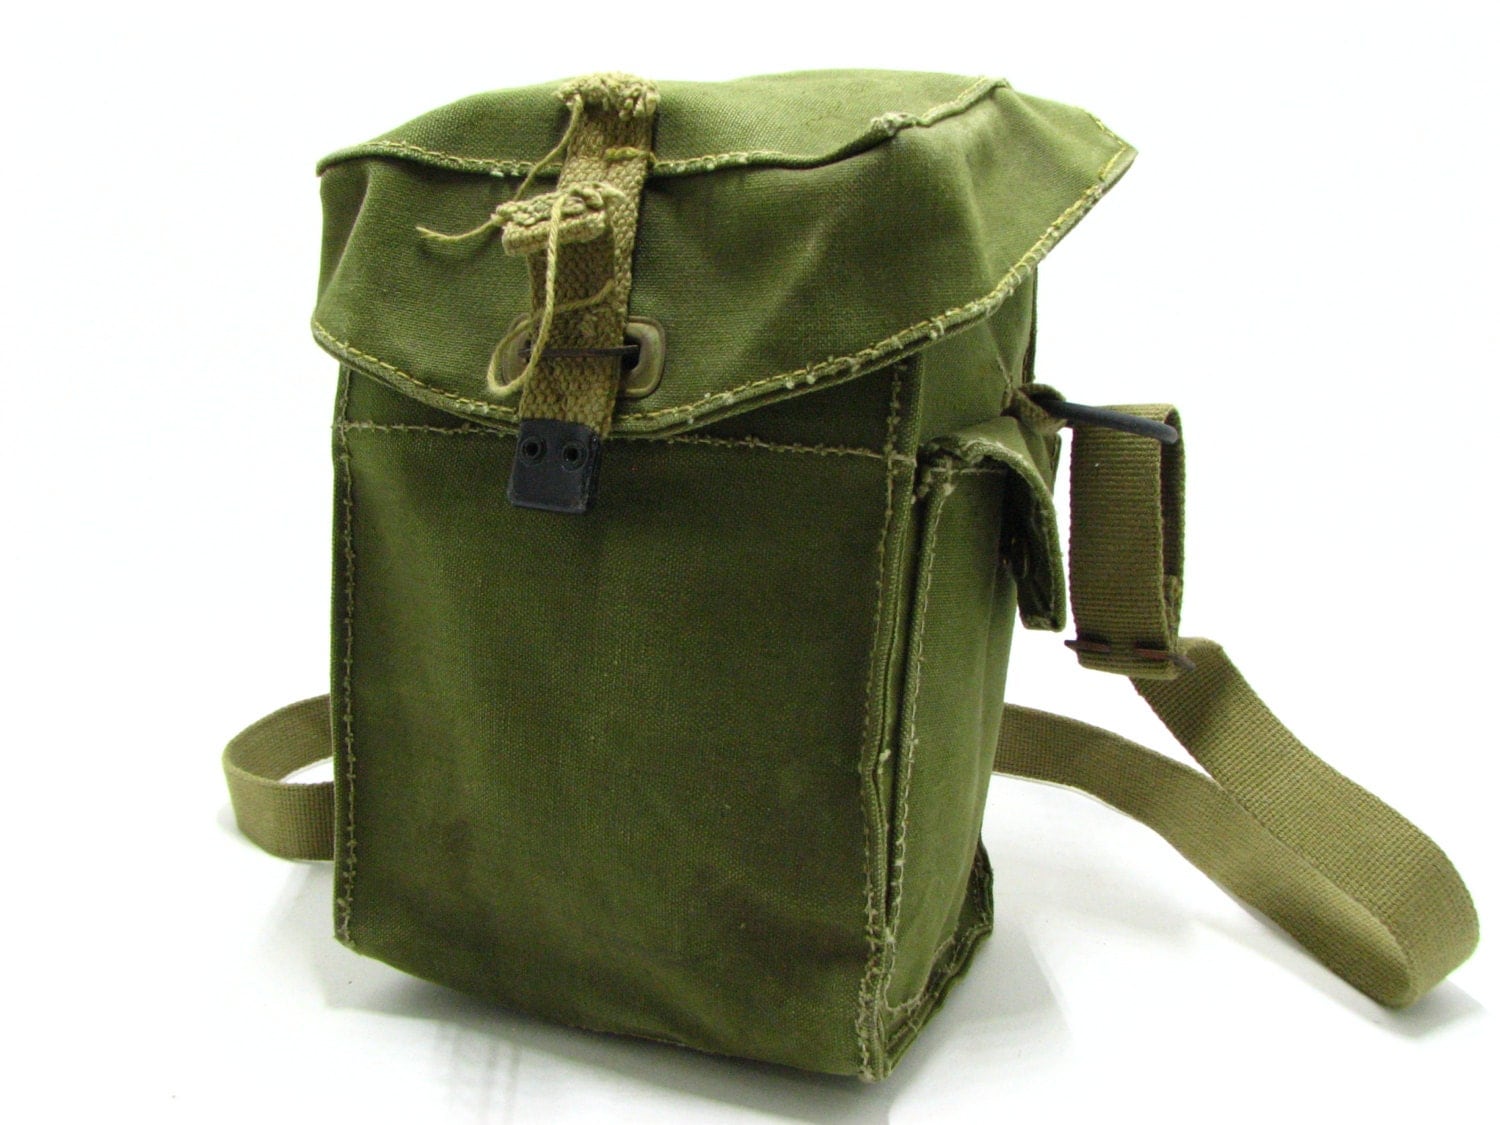 Vintage Rare Military Canvas Bag / Over the Shoulder Bag